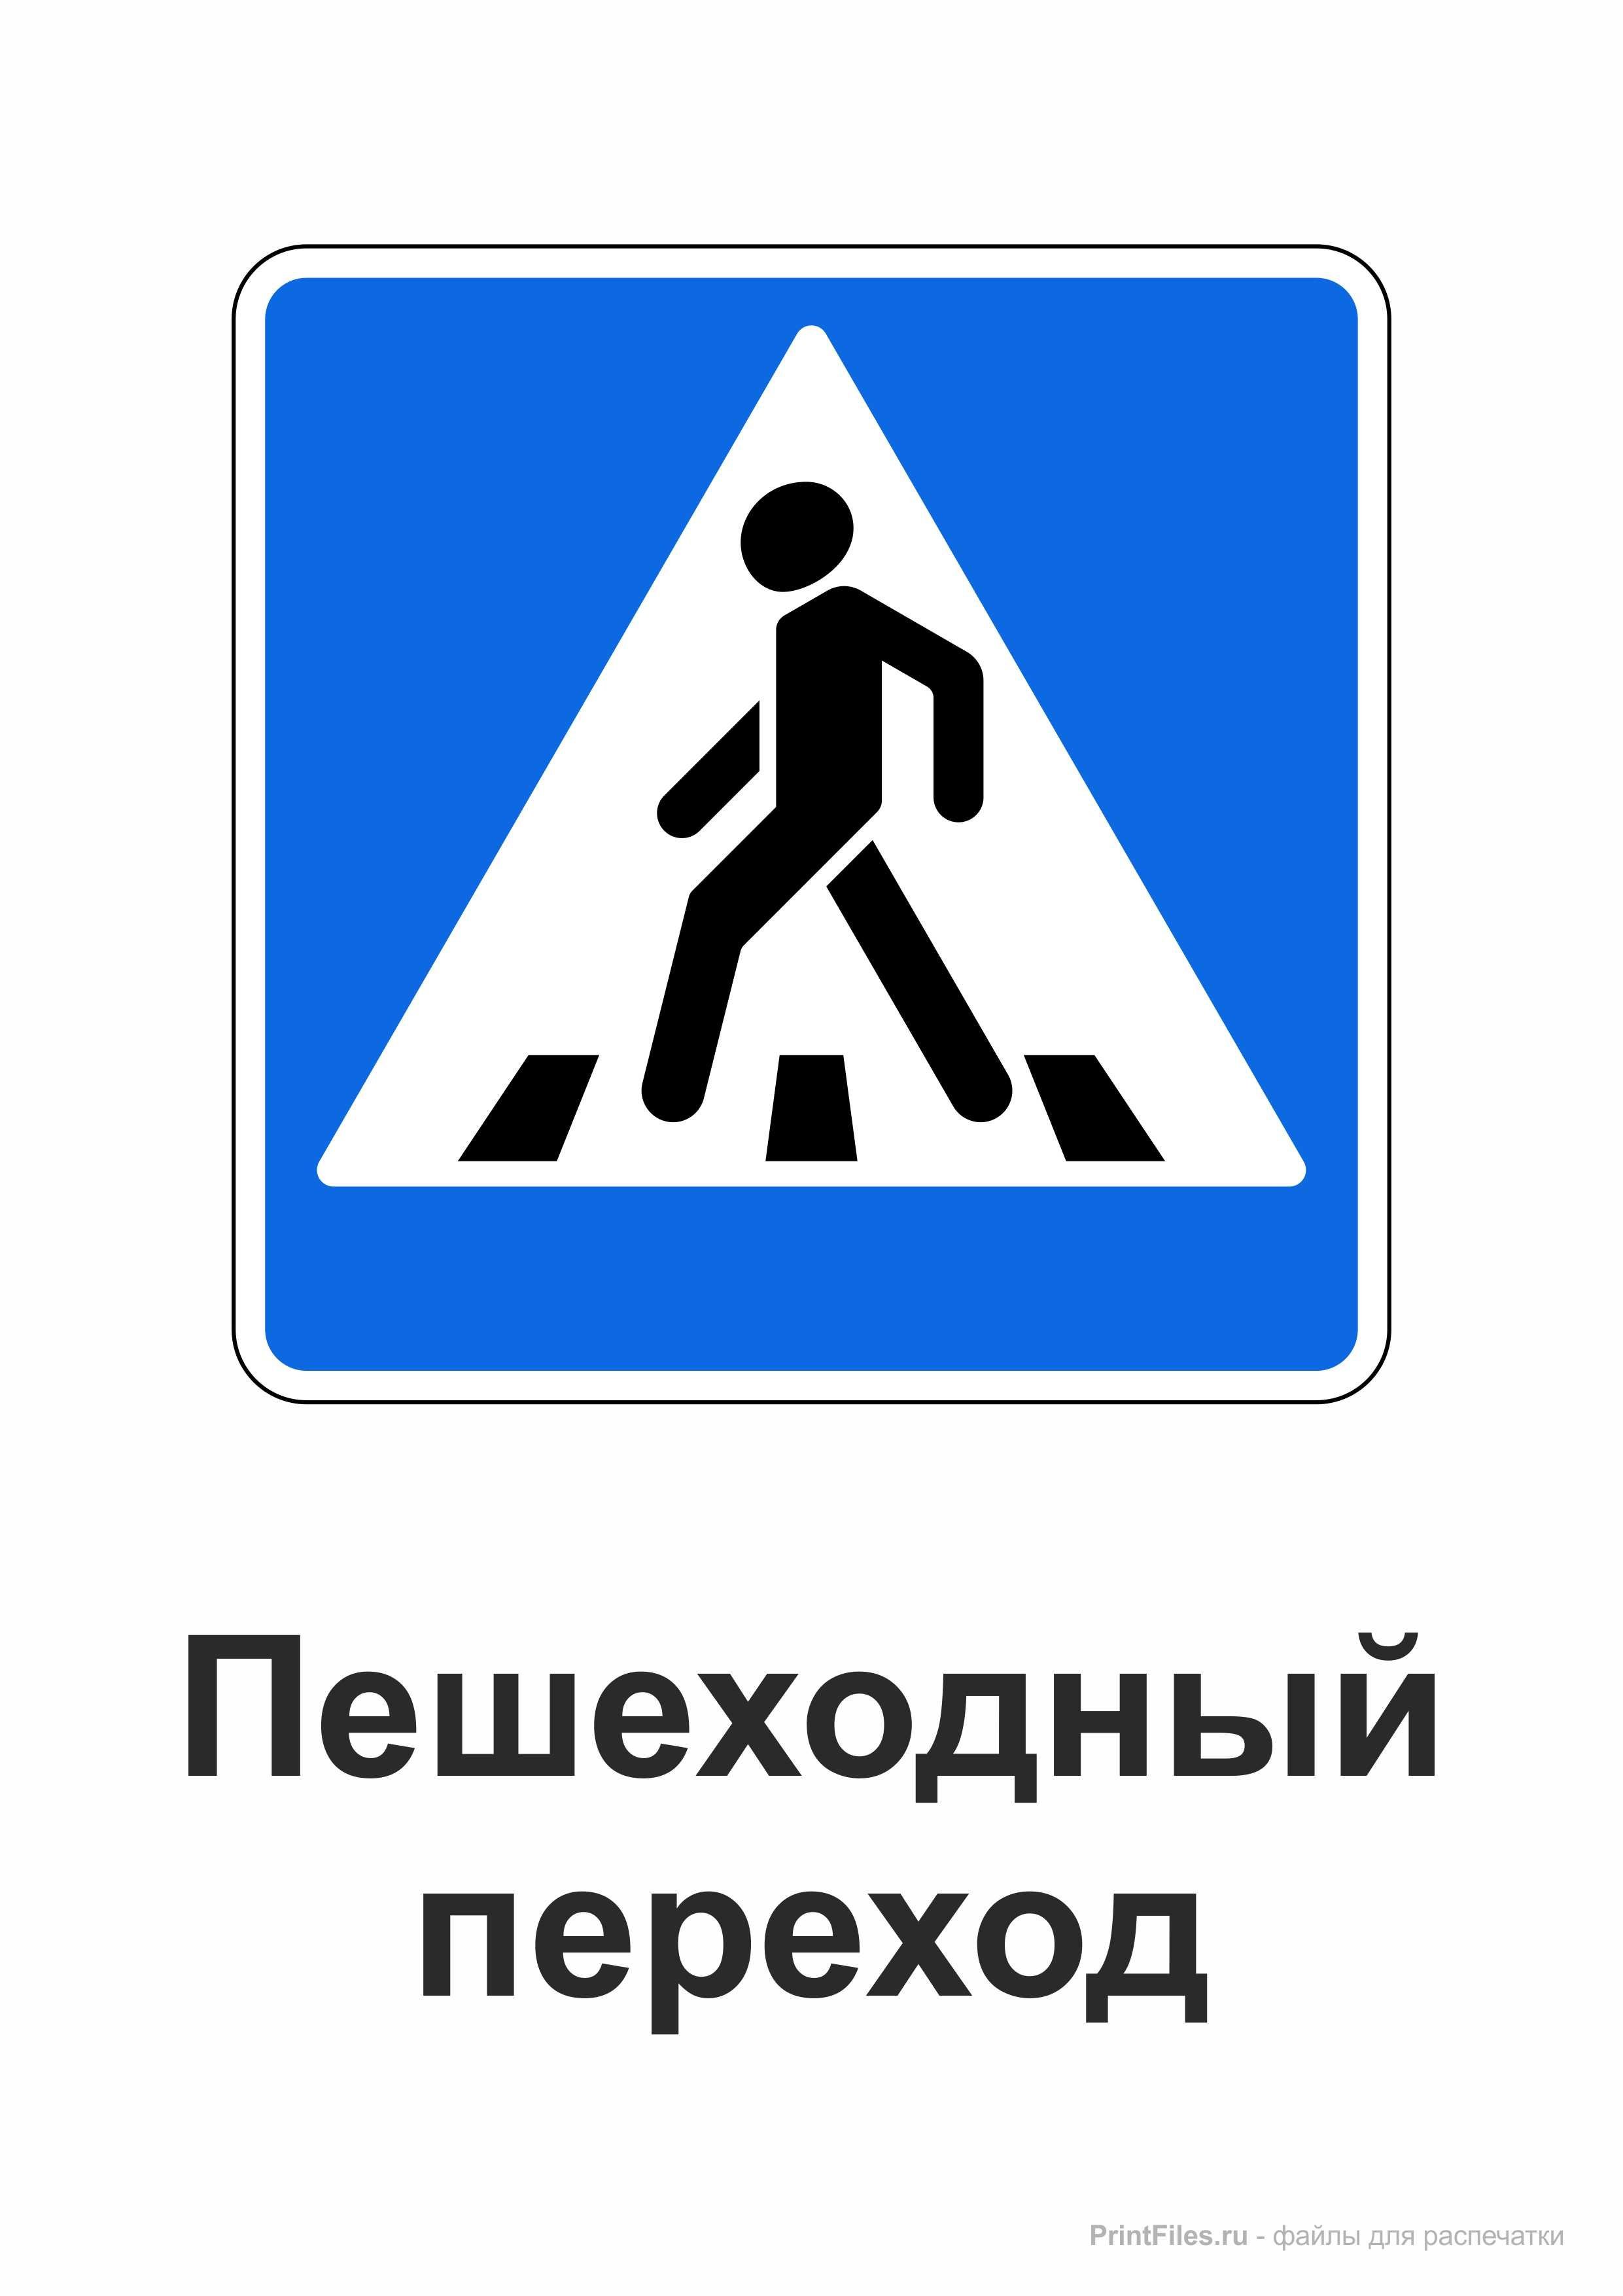 Знак пешеходный переход. Дорожный знак пешеходный переход. Дорожные знаки для пешеходов. Дорожный знак пешеходный перех.